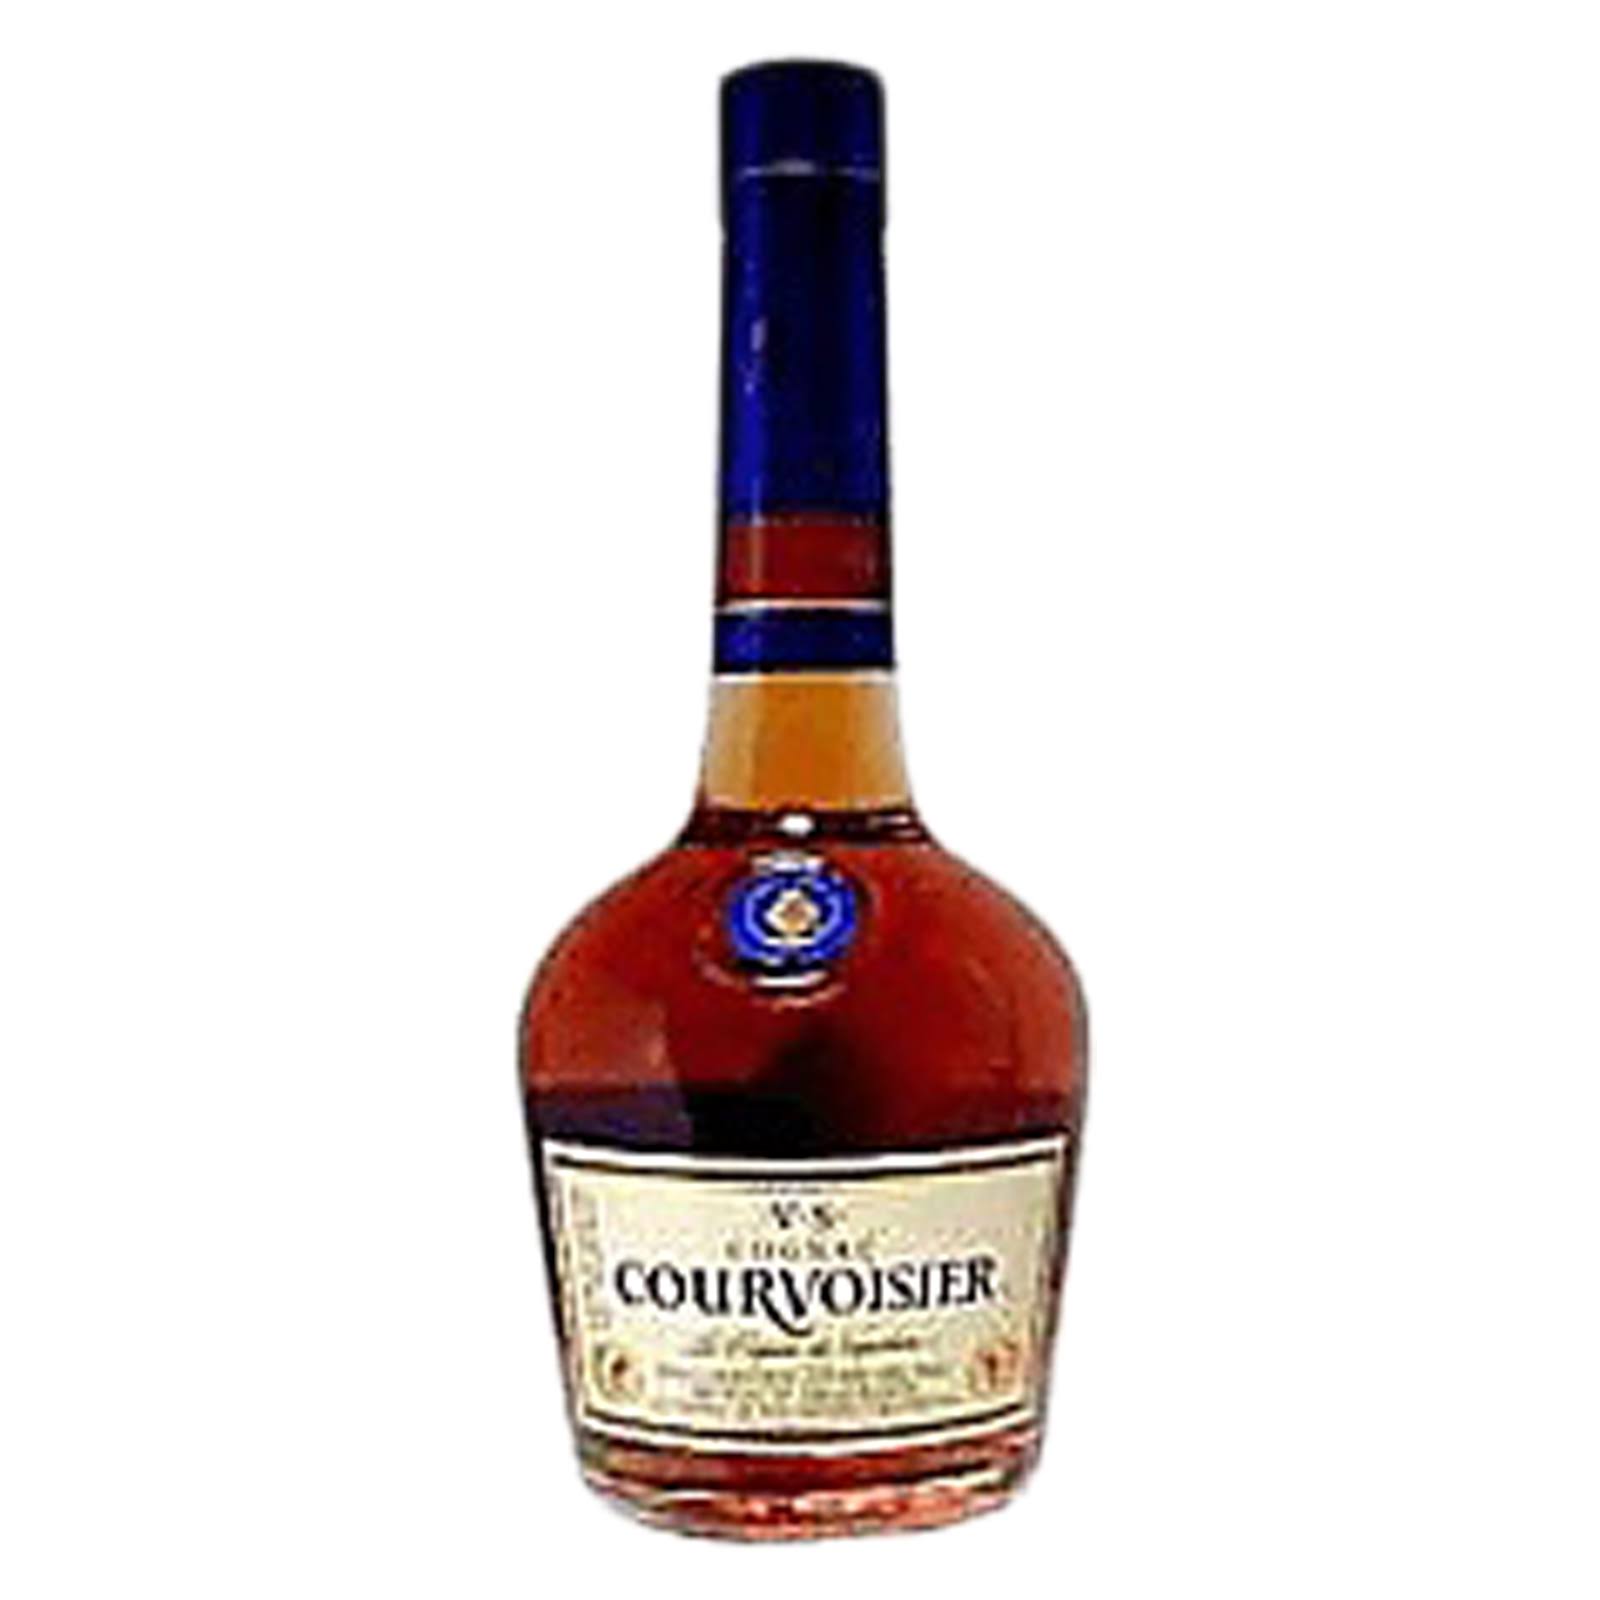 Courvoisier VS Cognac - 375 ml